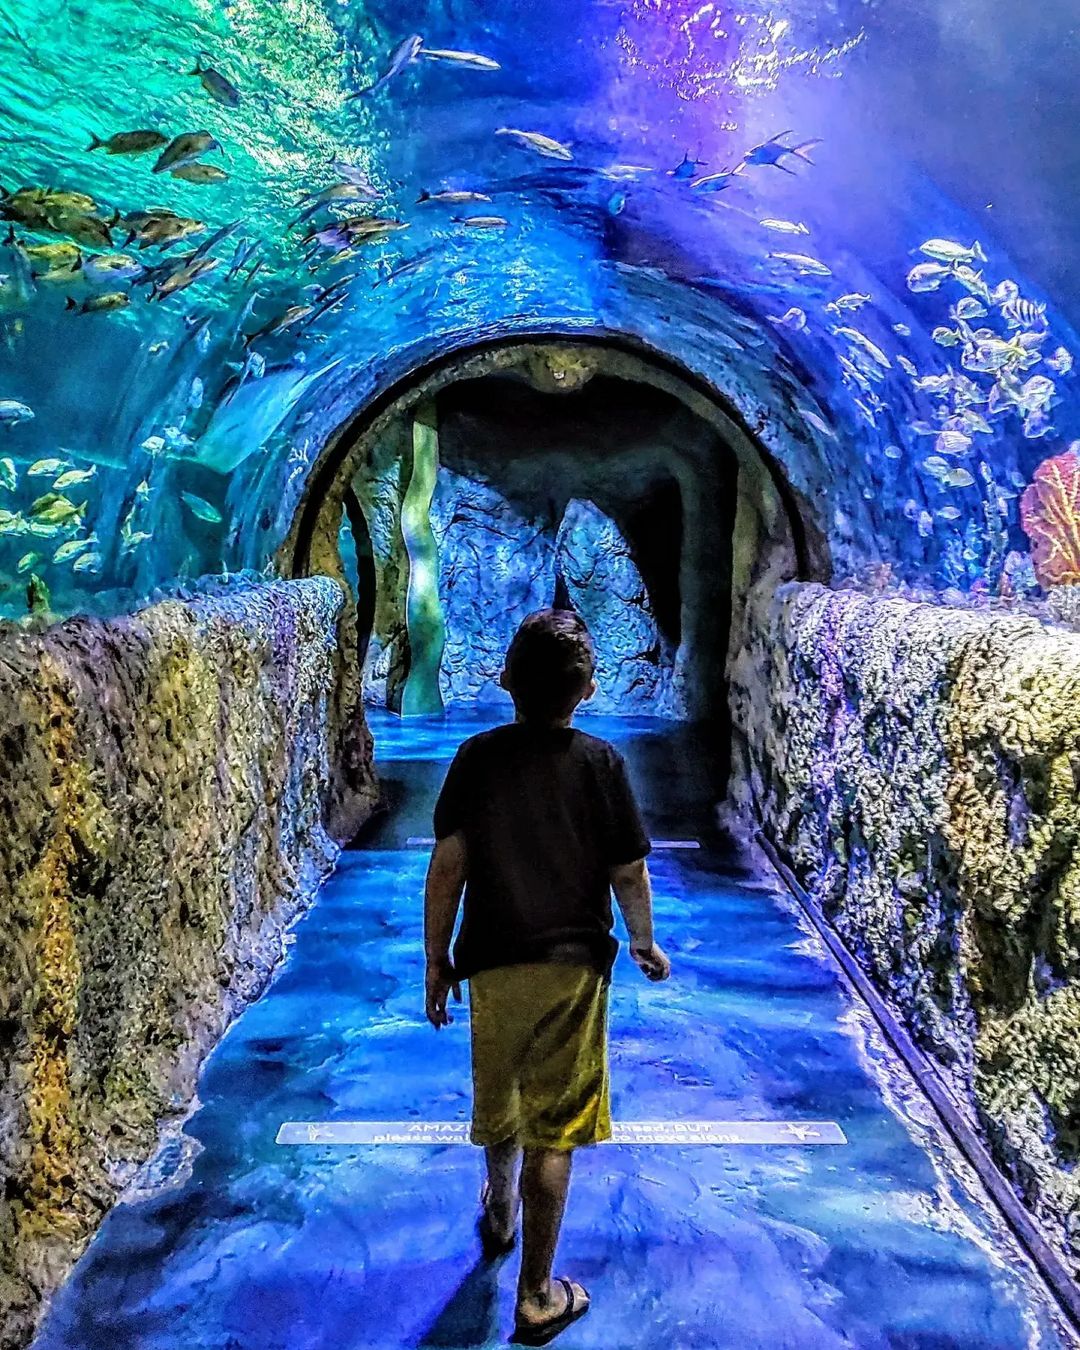 Sea Life Aquarium - Icon Park Orlando